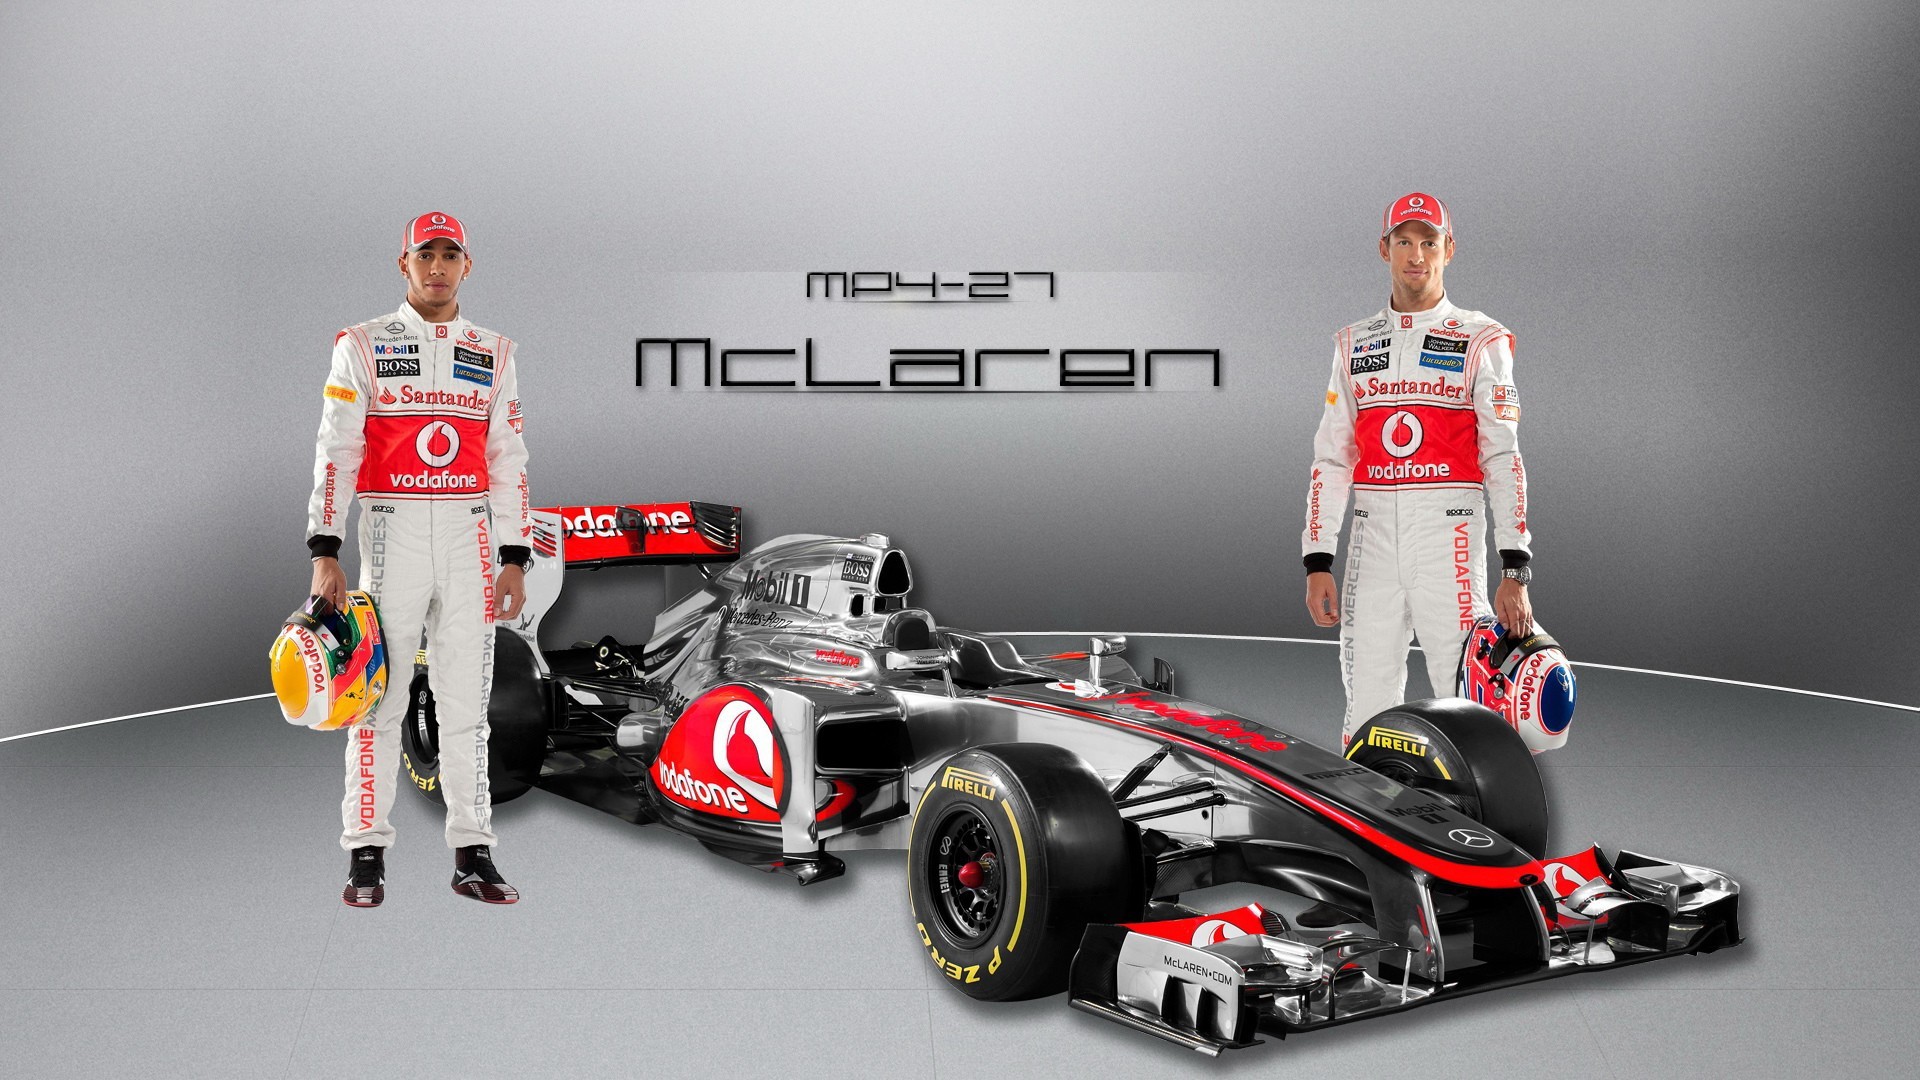 General 1920x1080 Formula 1 McLaren Formula 1 Lewis Hamilton Jenson Button men car vehicle sport race cars motorsport